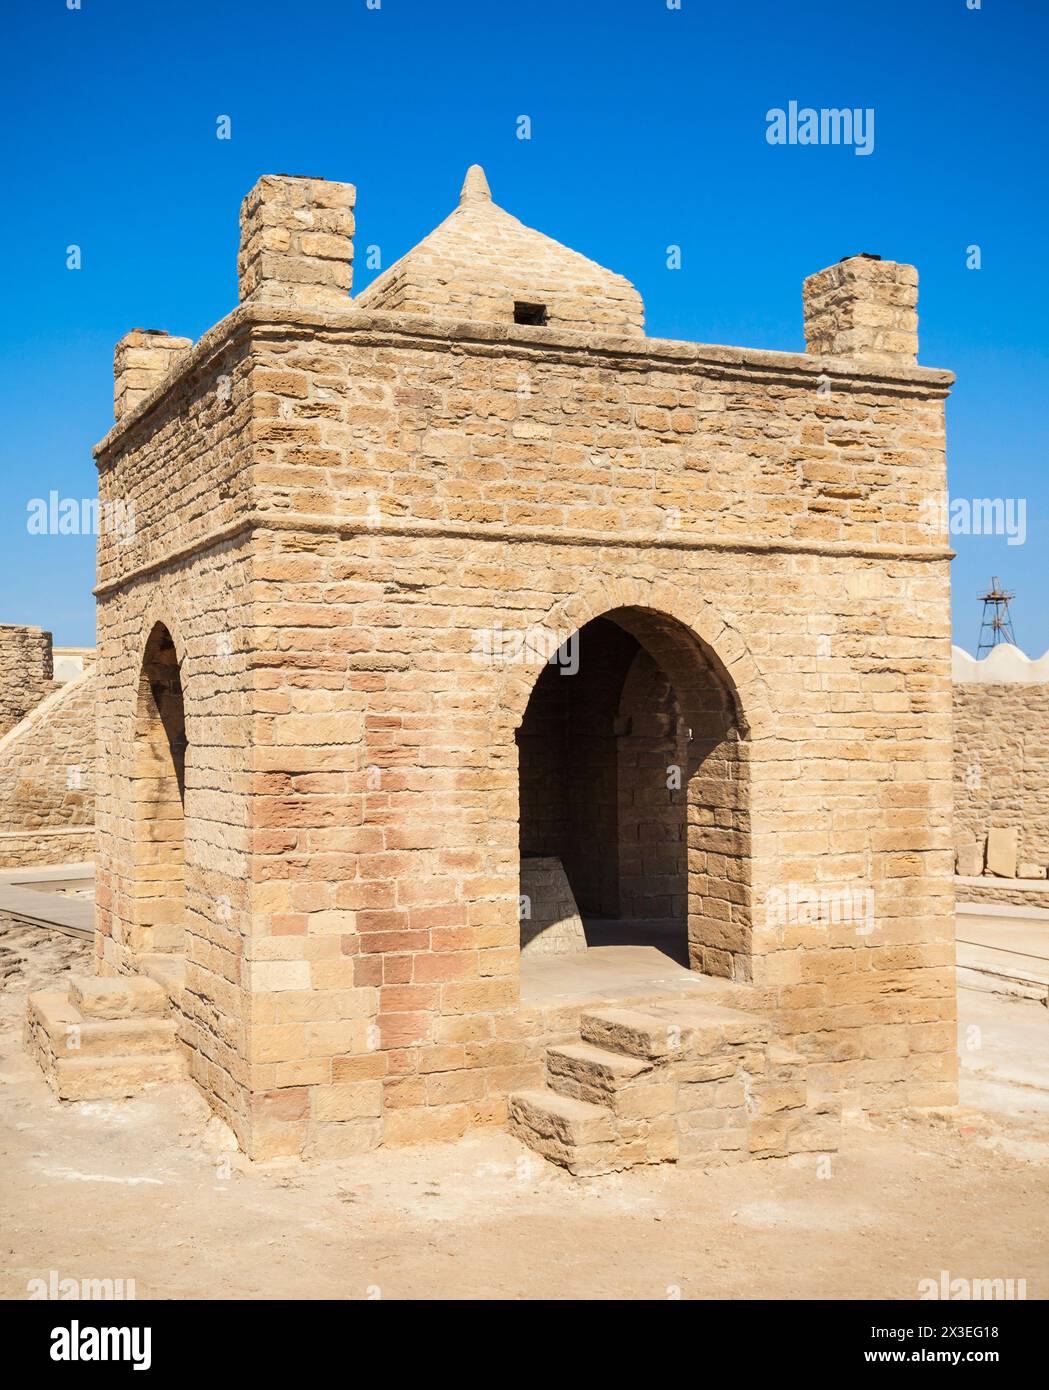 La Baku Ateshgah o il tempio di fuoco di Baku è un tempio di Surakhani vicino a Baku, in Azerbaijan. Sulla base di Persiano e iscrizioni indiano, il tempio fu utilizzato come Foto Stock